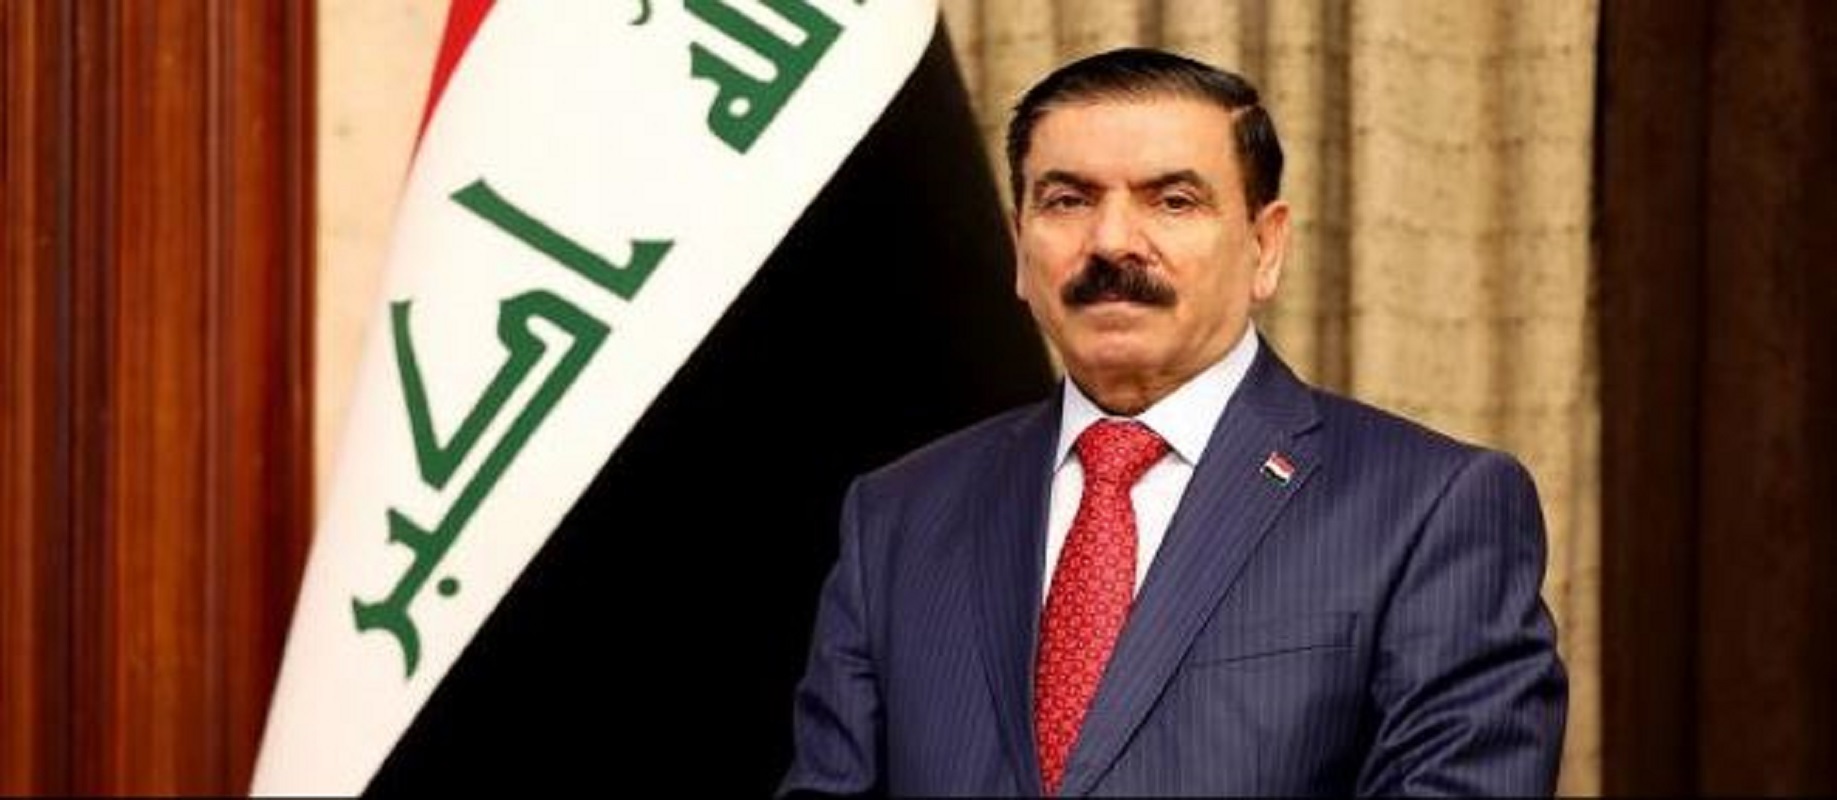 العراق.. غلق صفحات القادة الأمنيين على مواقع التواصل الاجتماعي